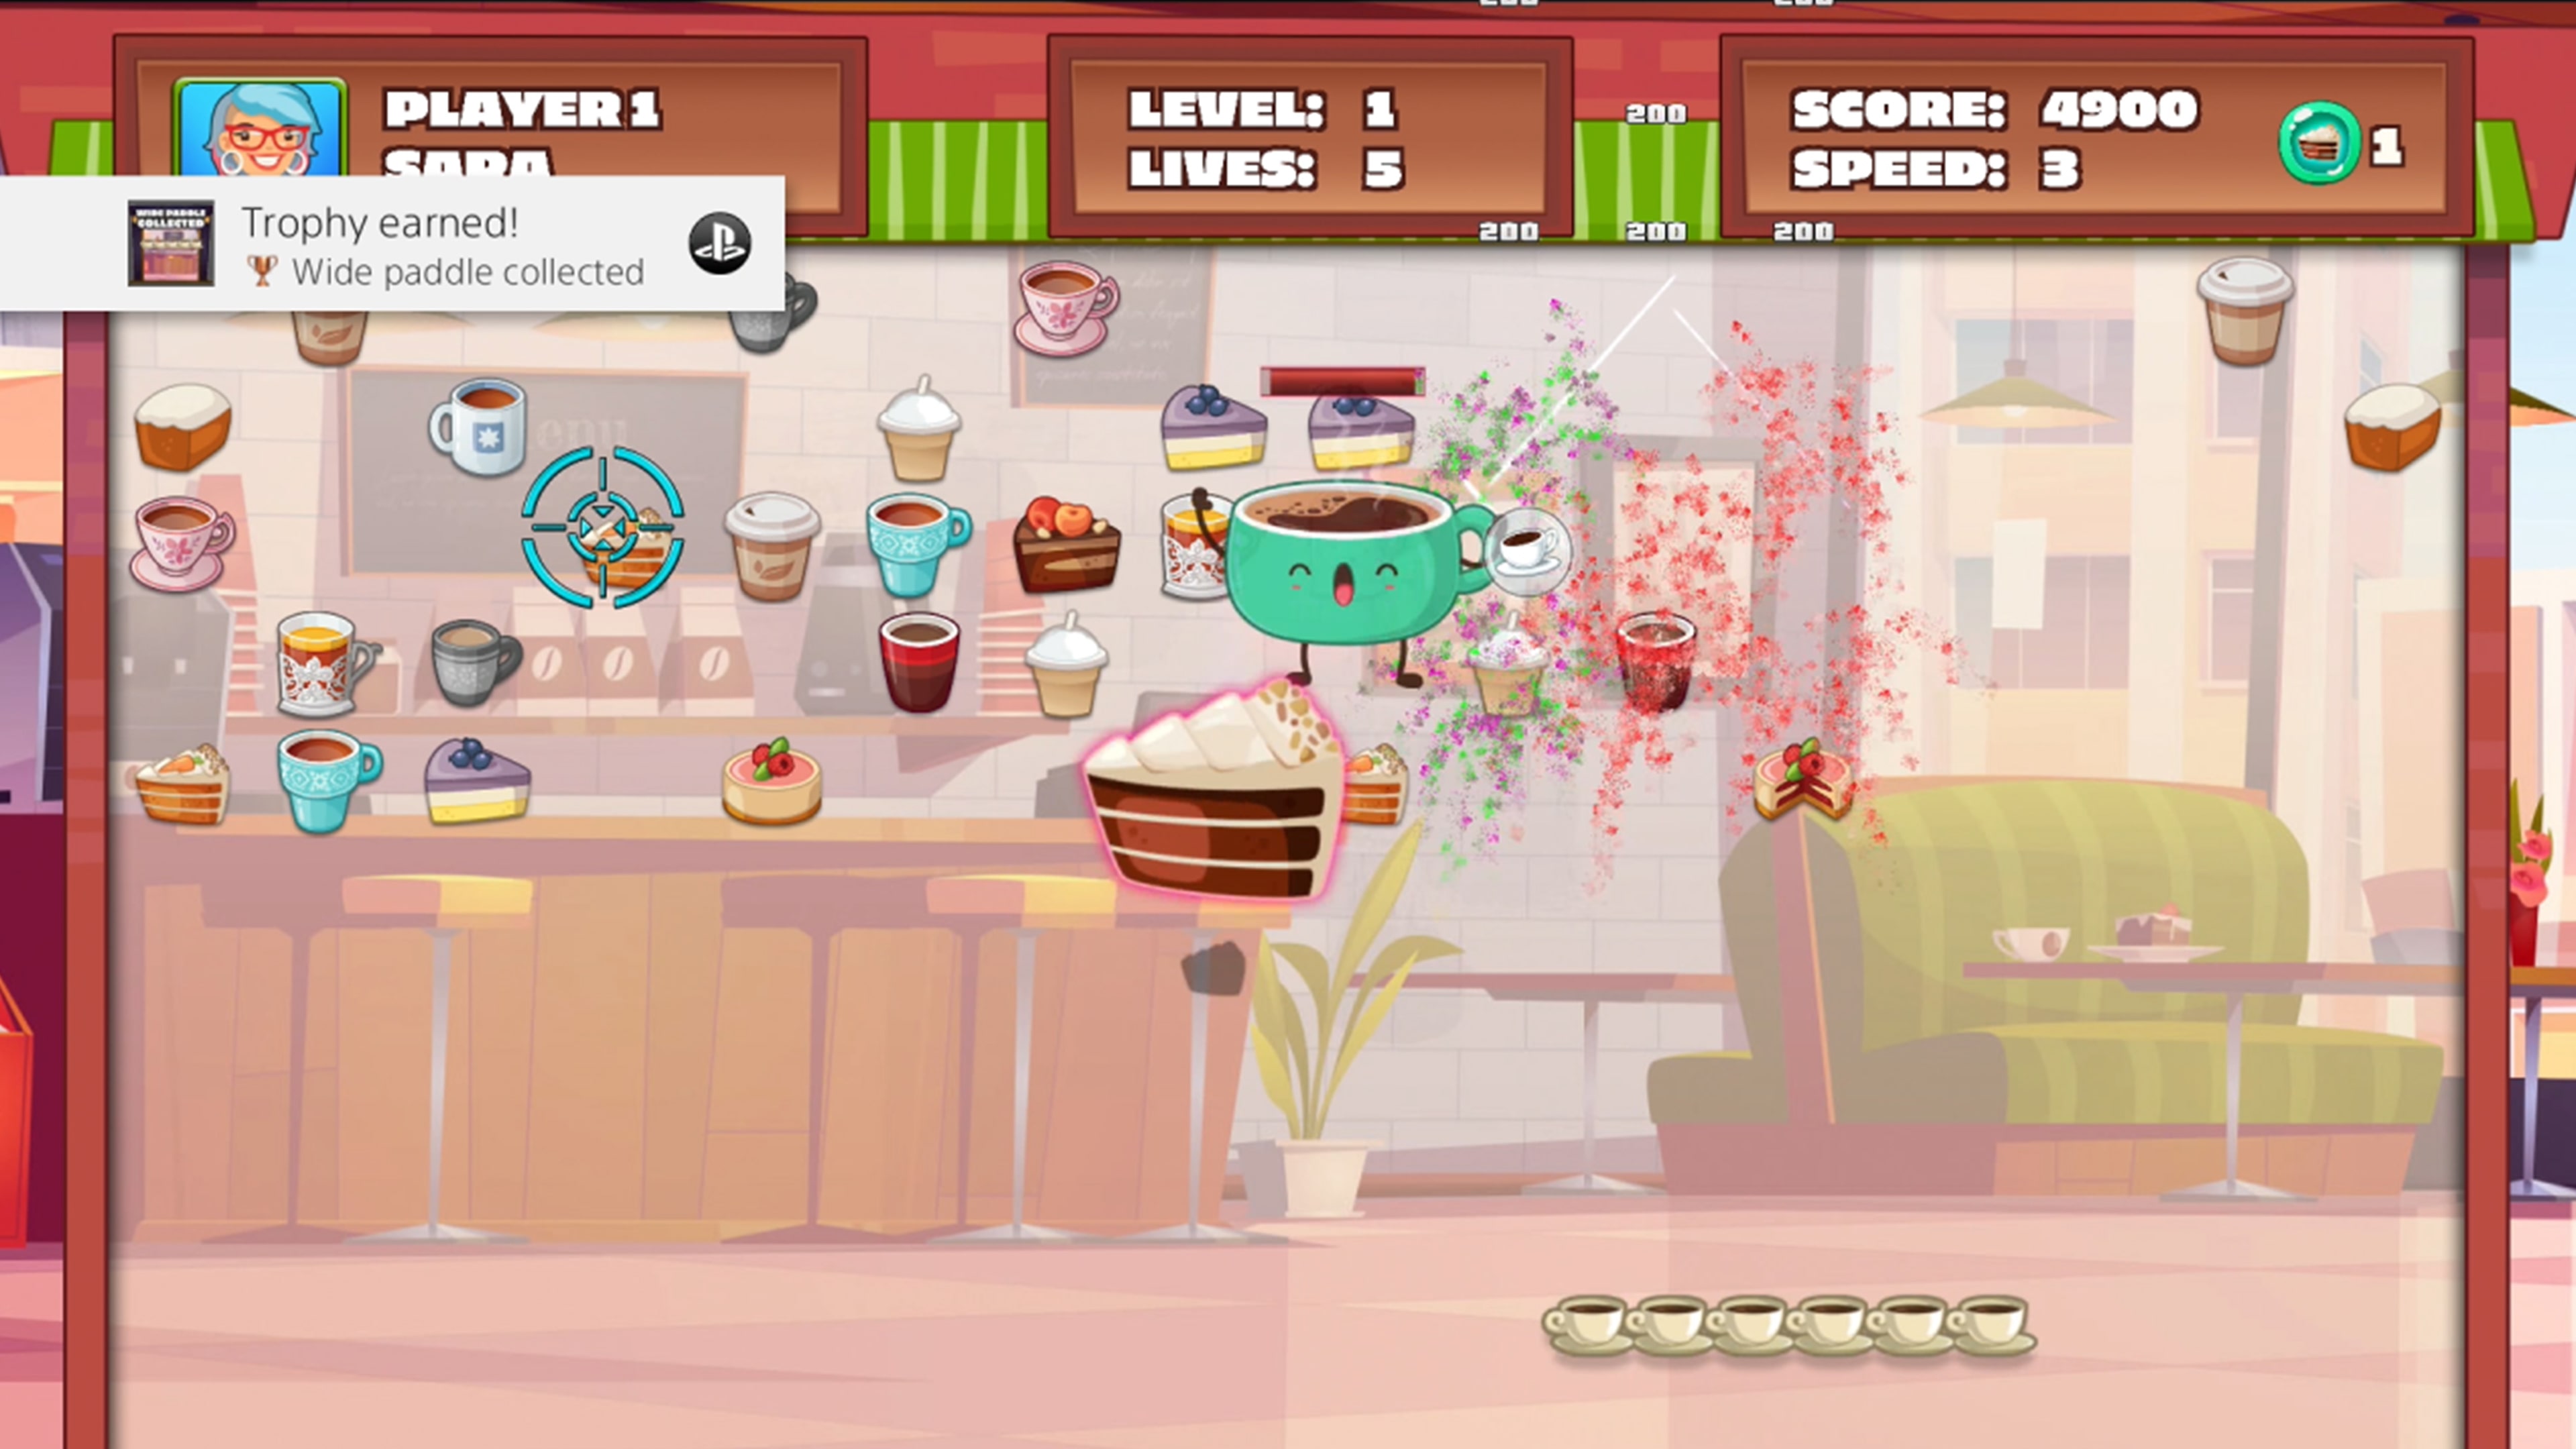 Coffee Break Solitaire - Games online